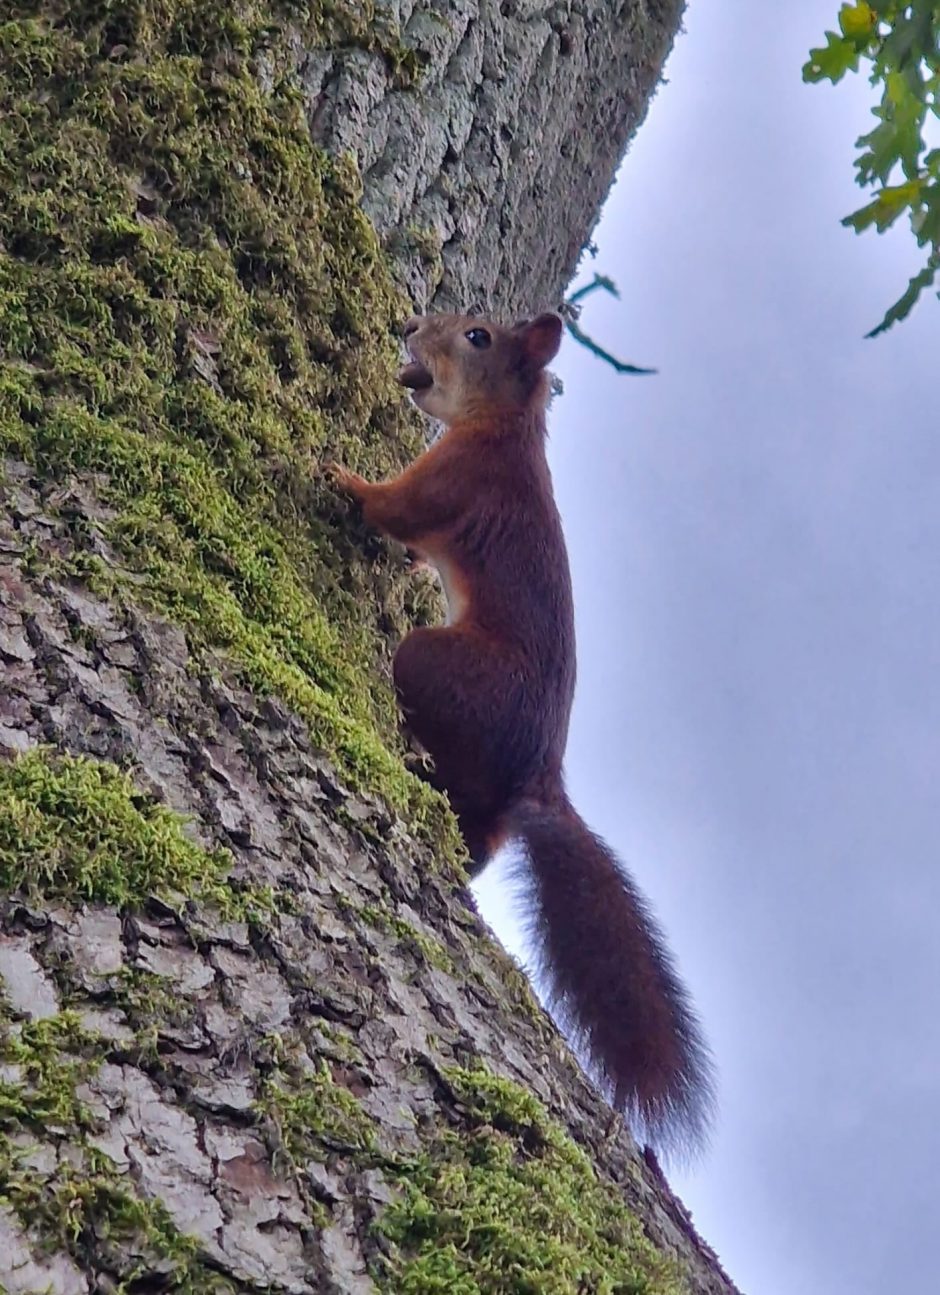 Voverių šeimyna – pramoga Plungės dvaro parko lankytojams